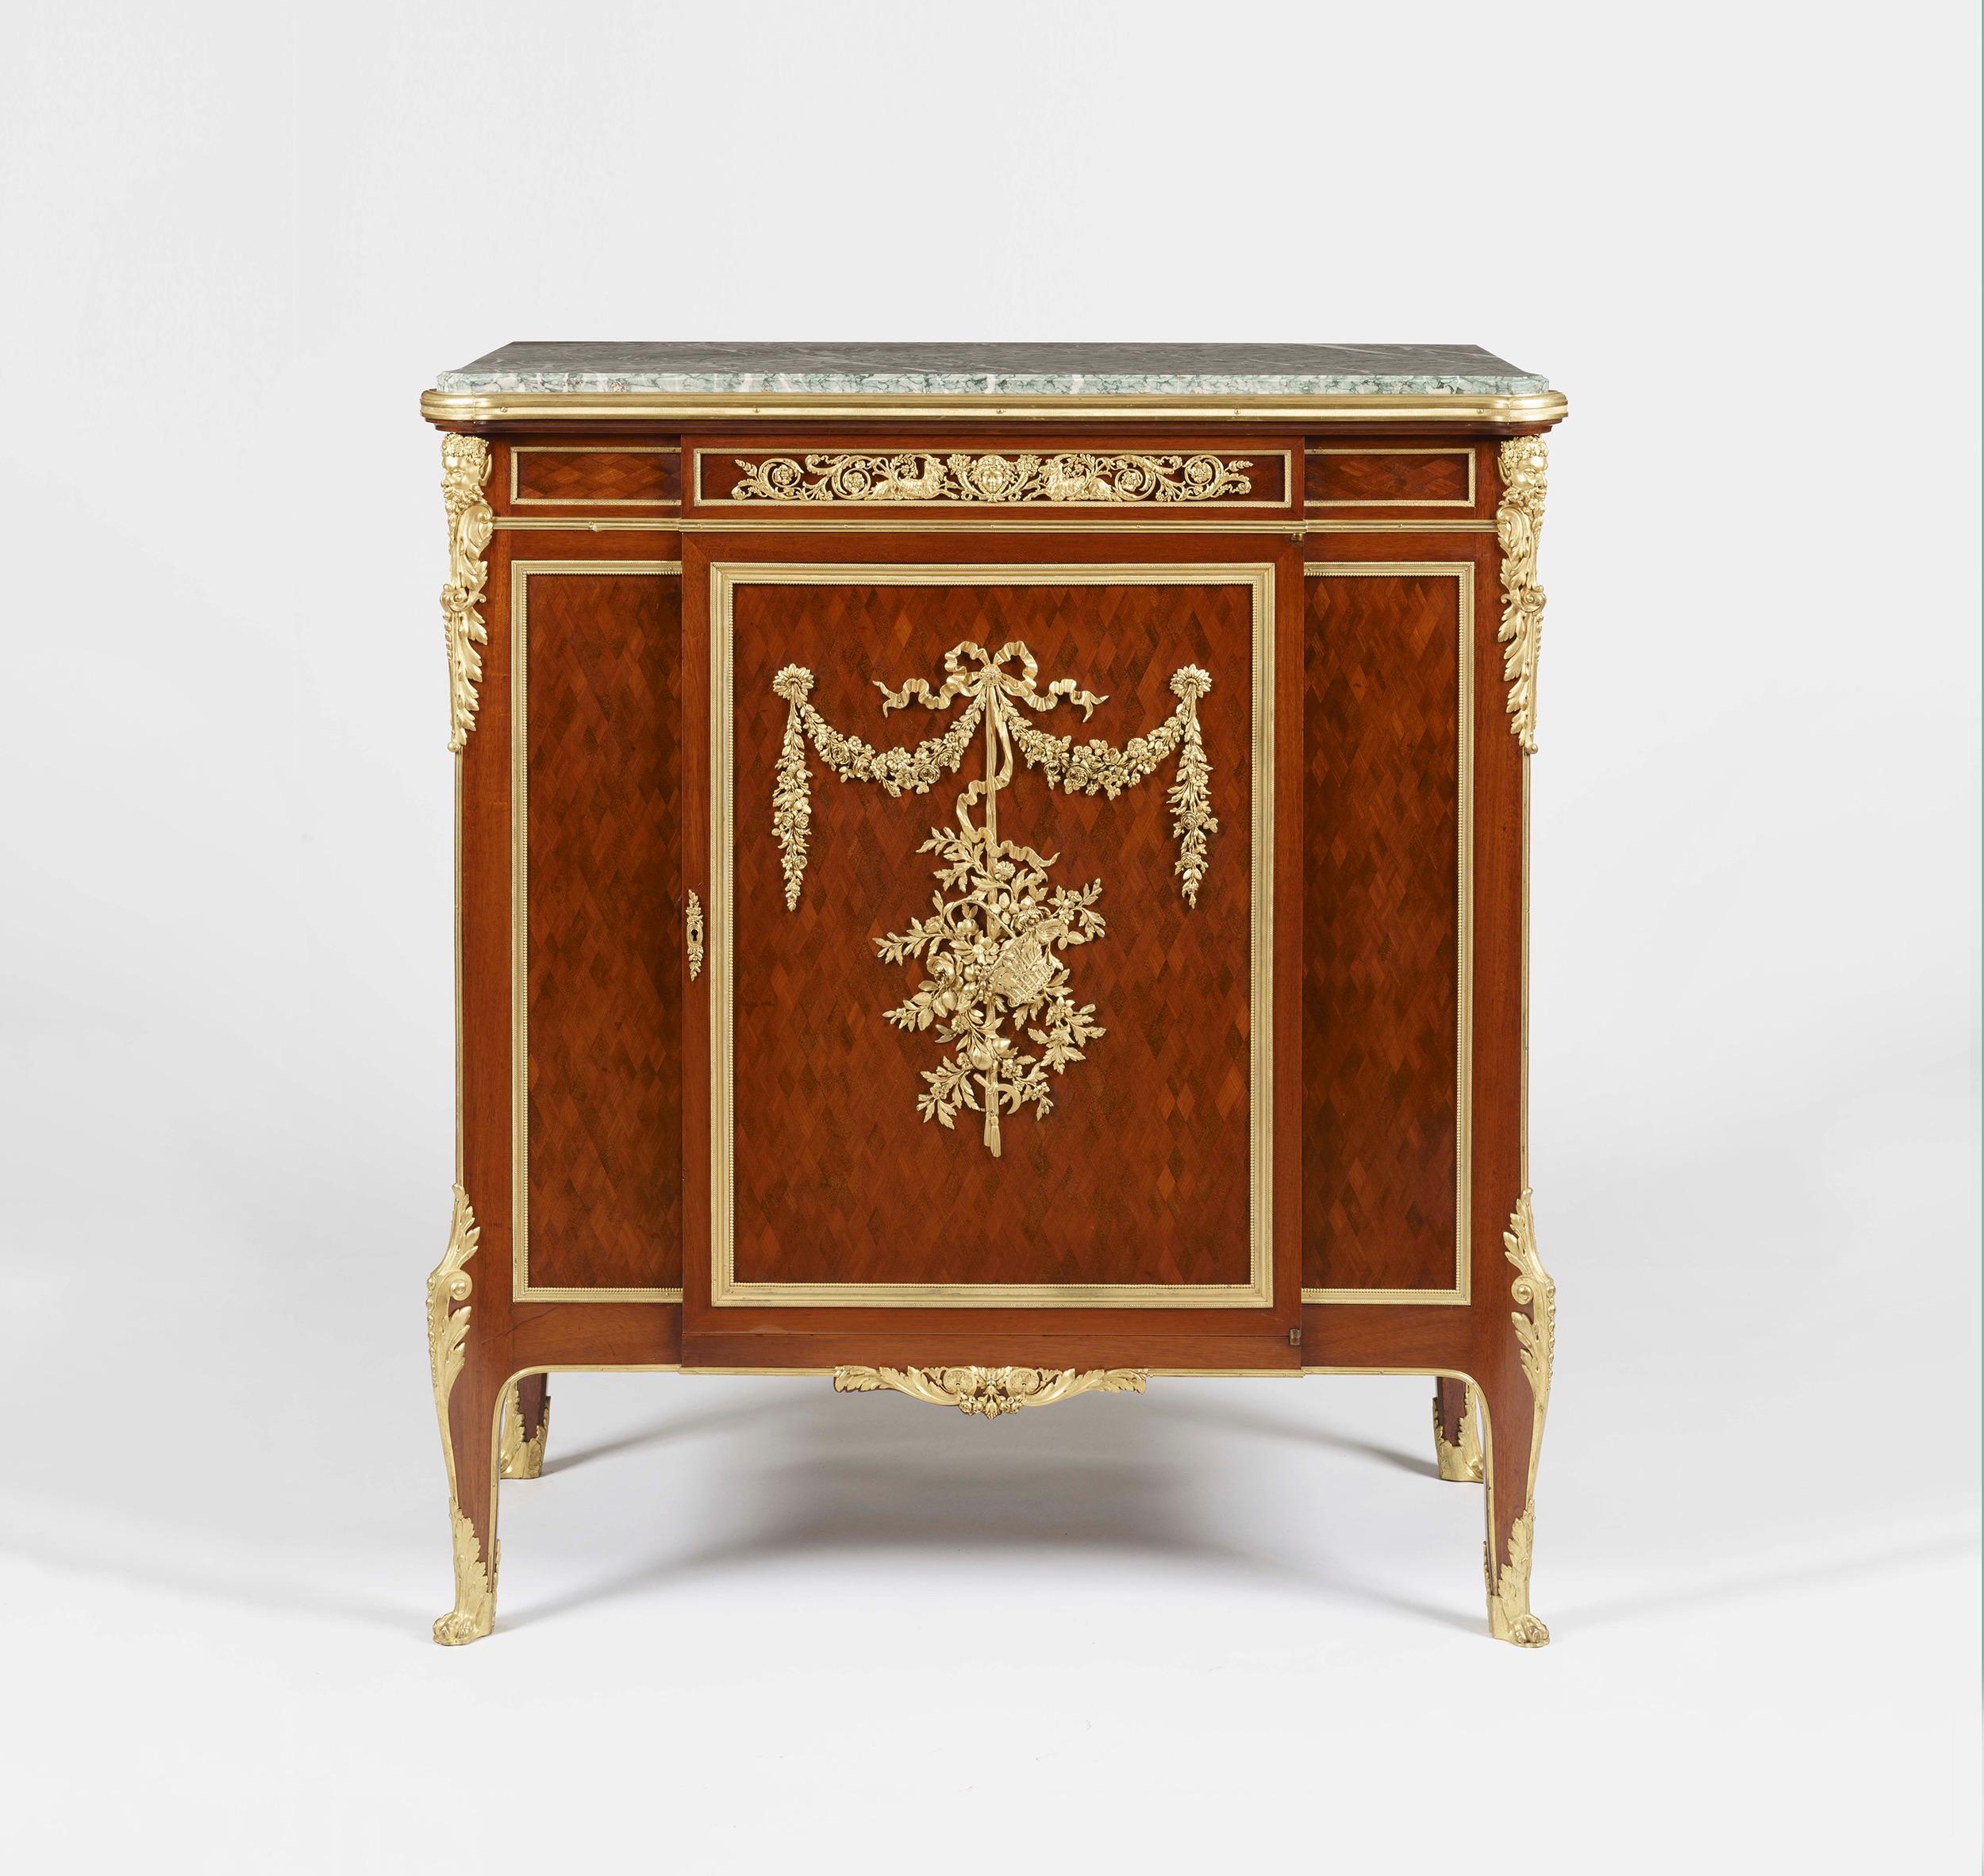 Un meuble à monture ormée et à parquet en acajou
par François Linke

Construit à la manière Louis XV, en acajou parqueterie et orné de montures en bronze doré de la plus belle qualité, avec une plate-forme en marbre Breccia Verde s'élevant de